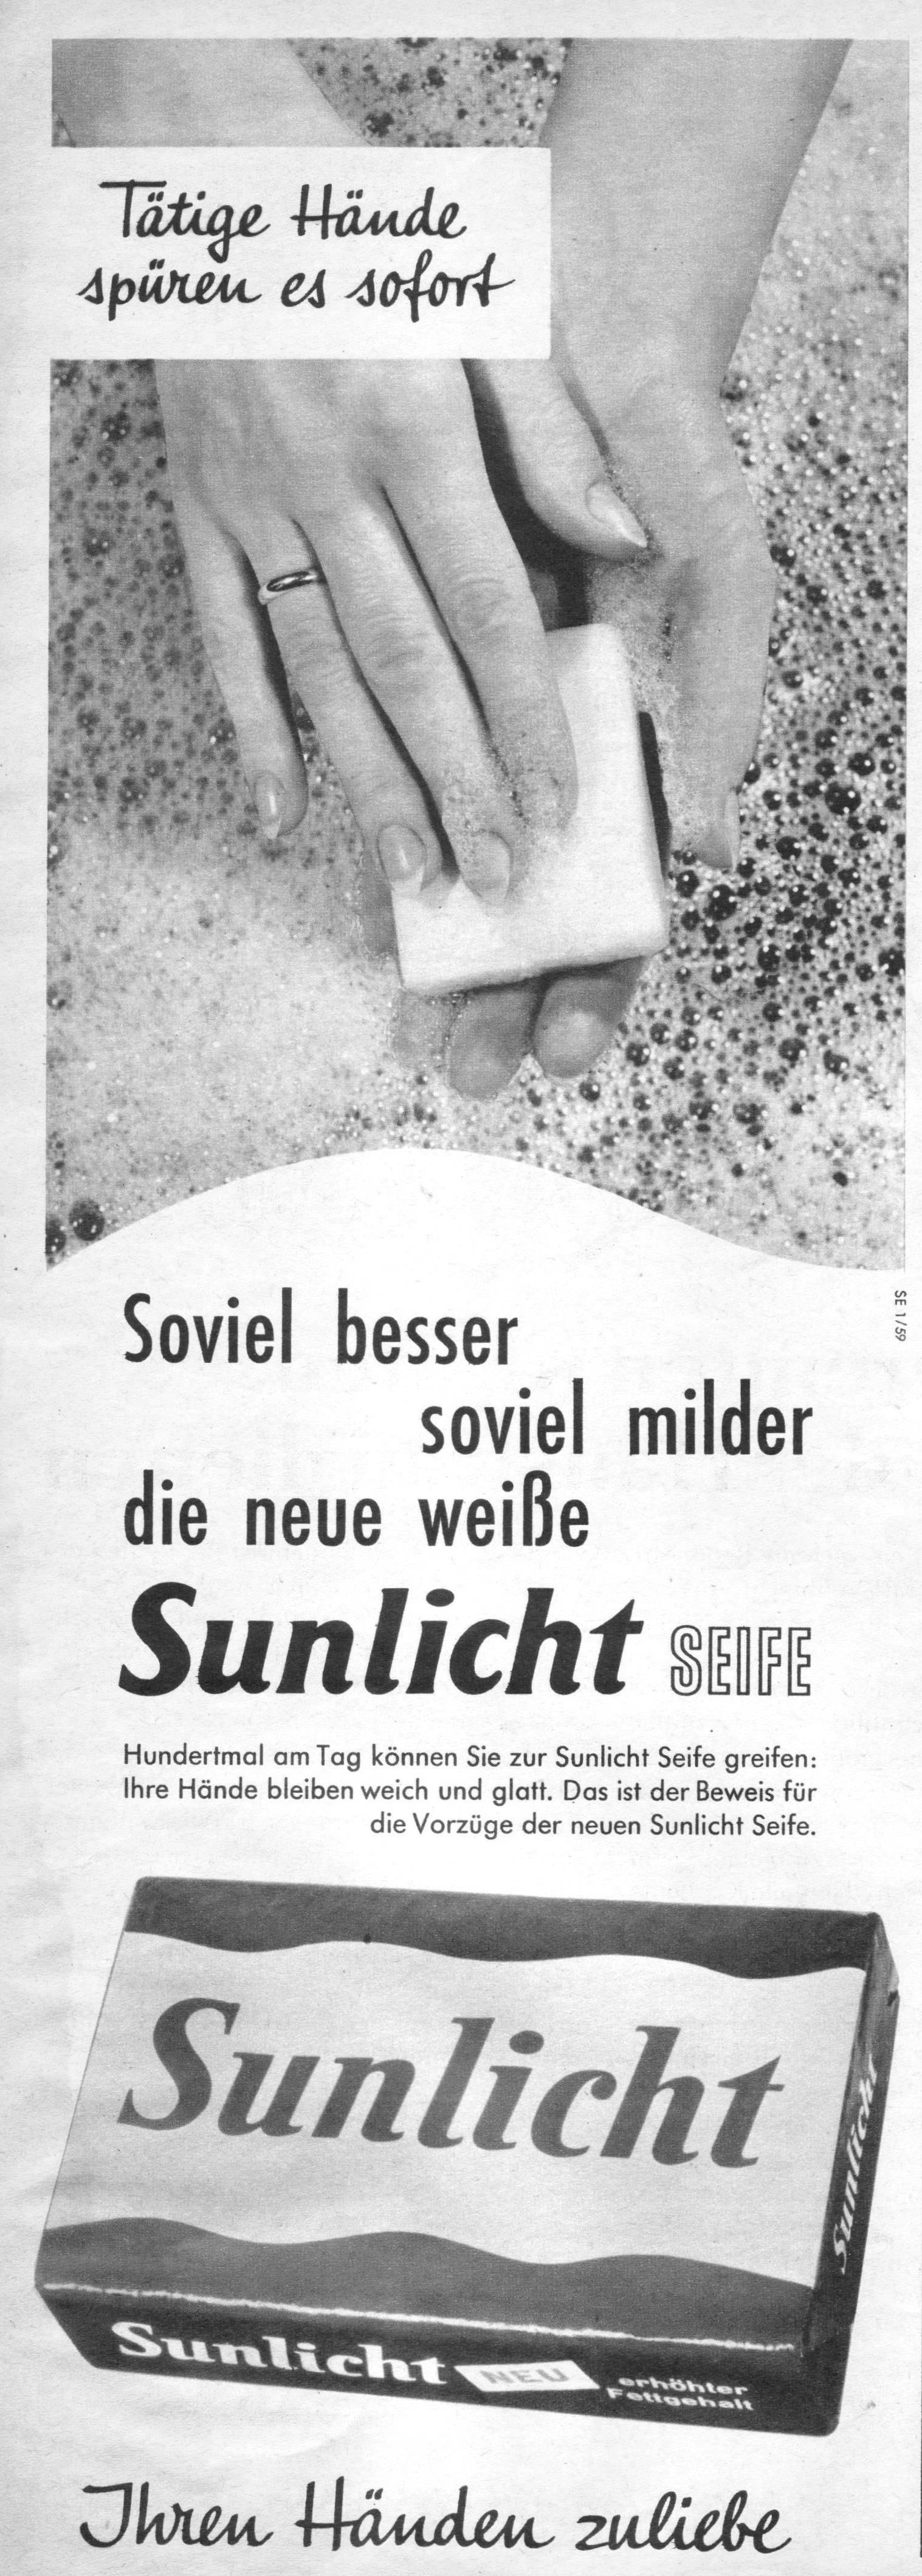 Sunlicht 1959 127.jpg